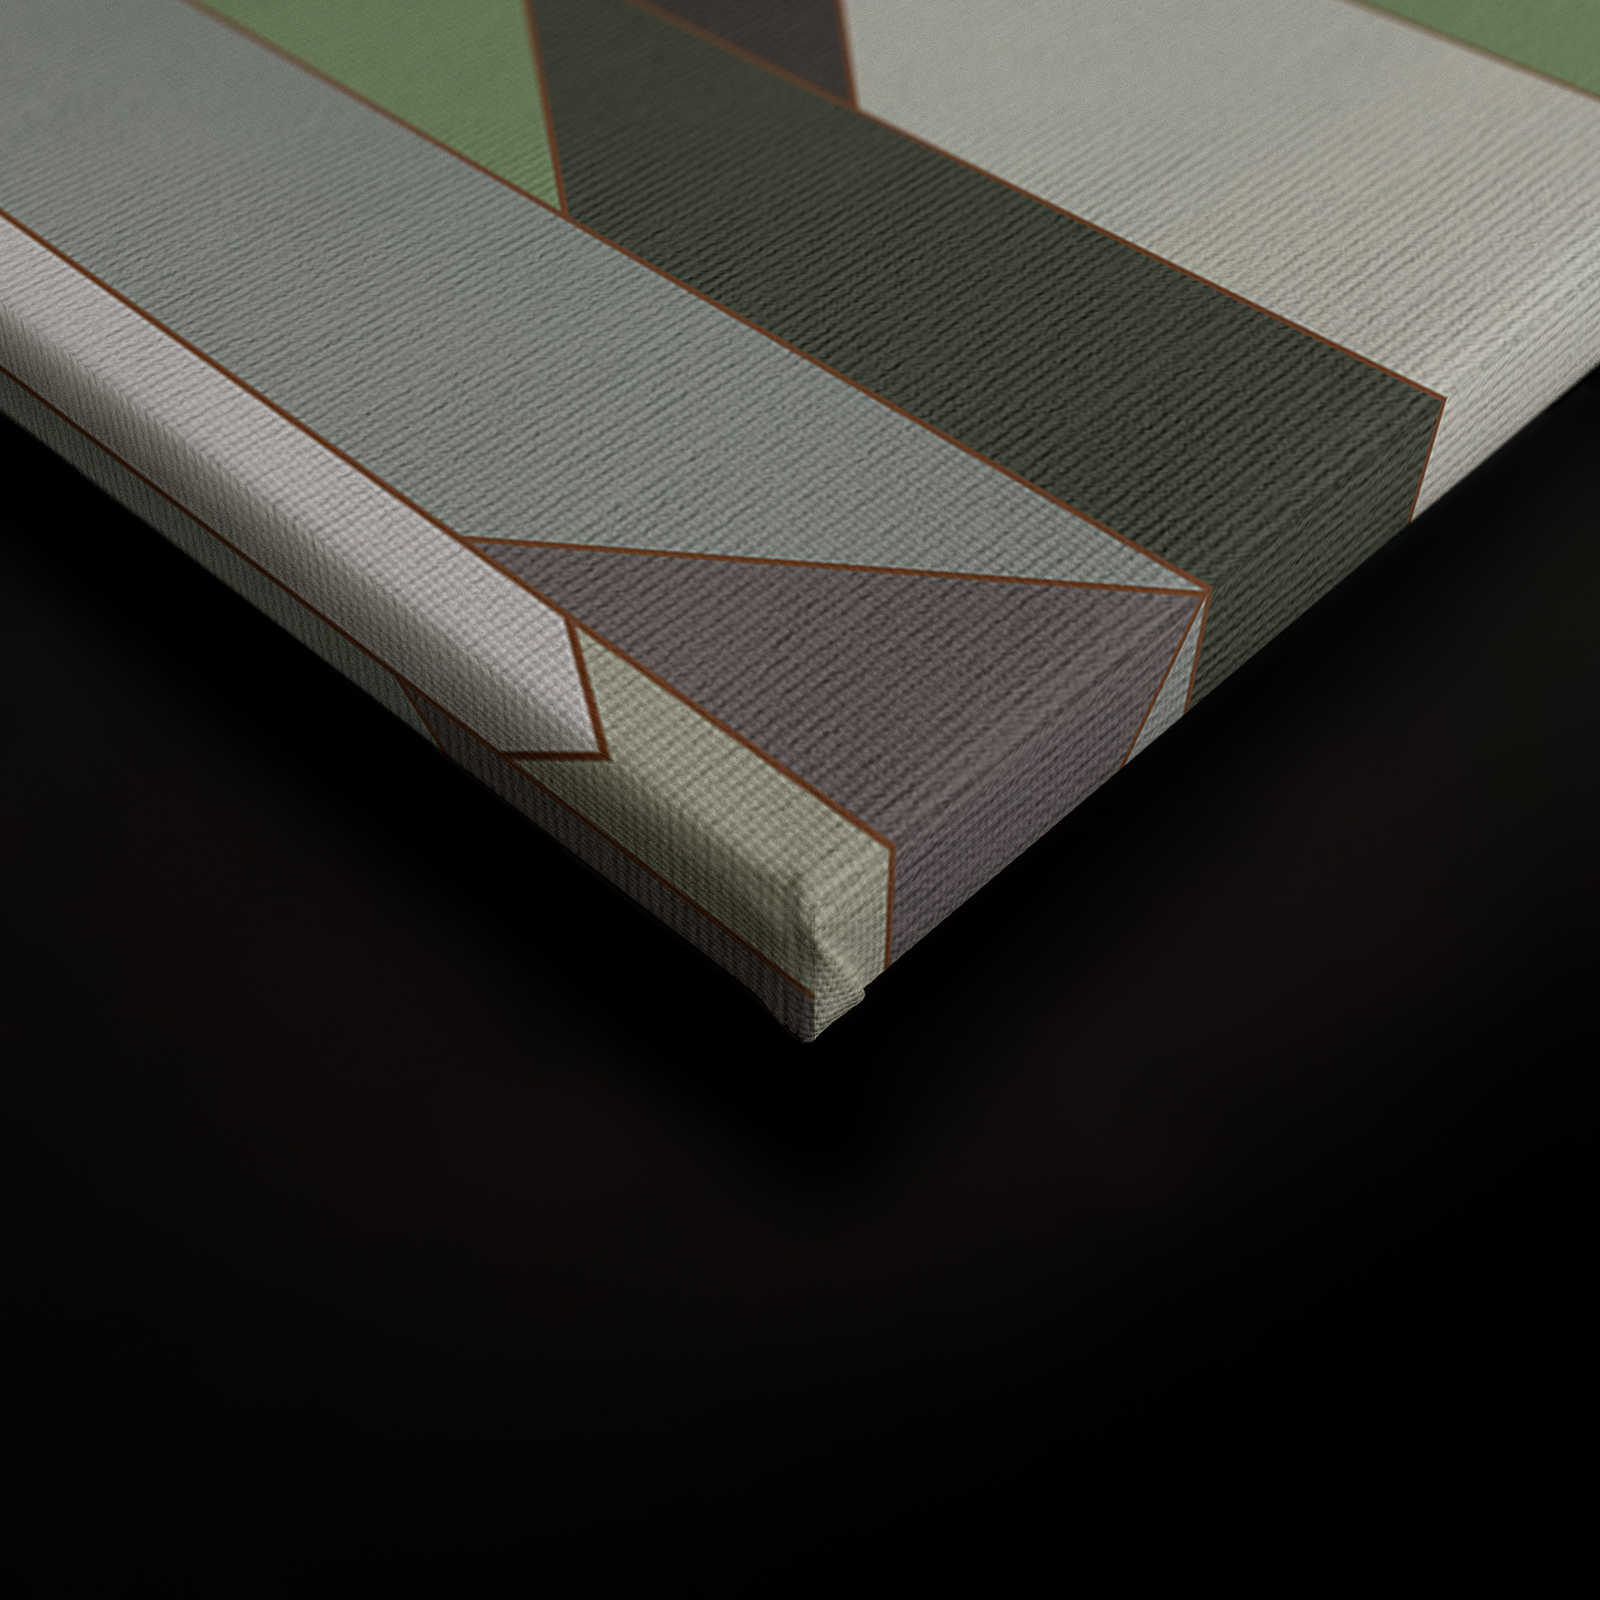             Fold 1 - Toile à rayures de style rétro - 0,90 m x 0,60 m
        